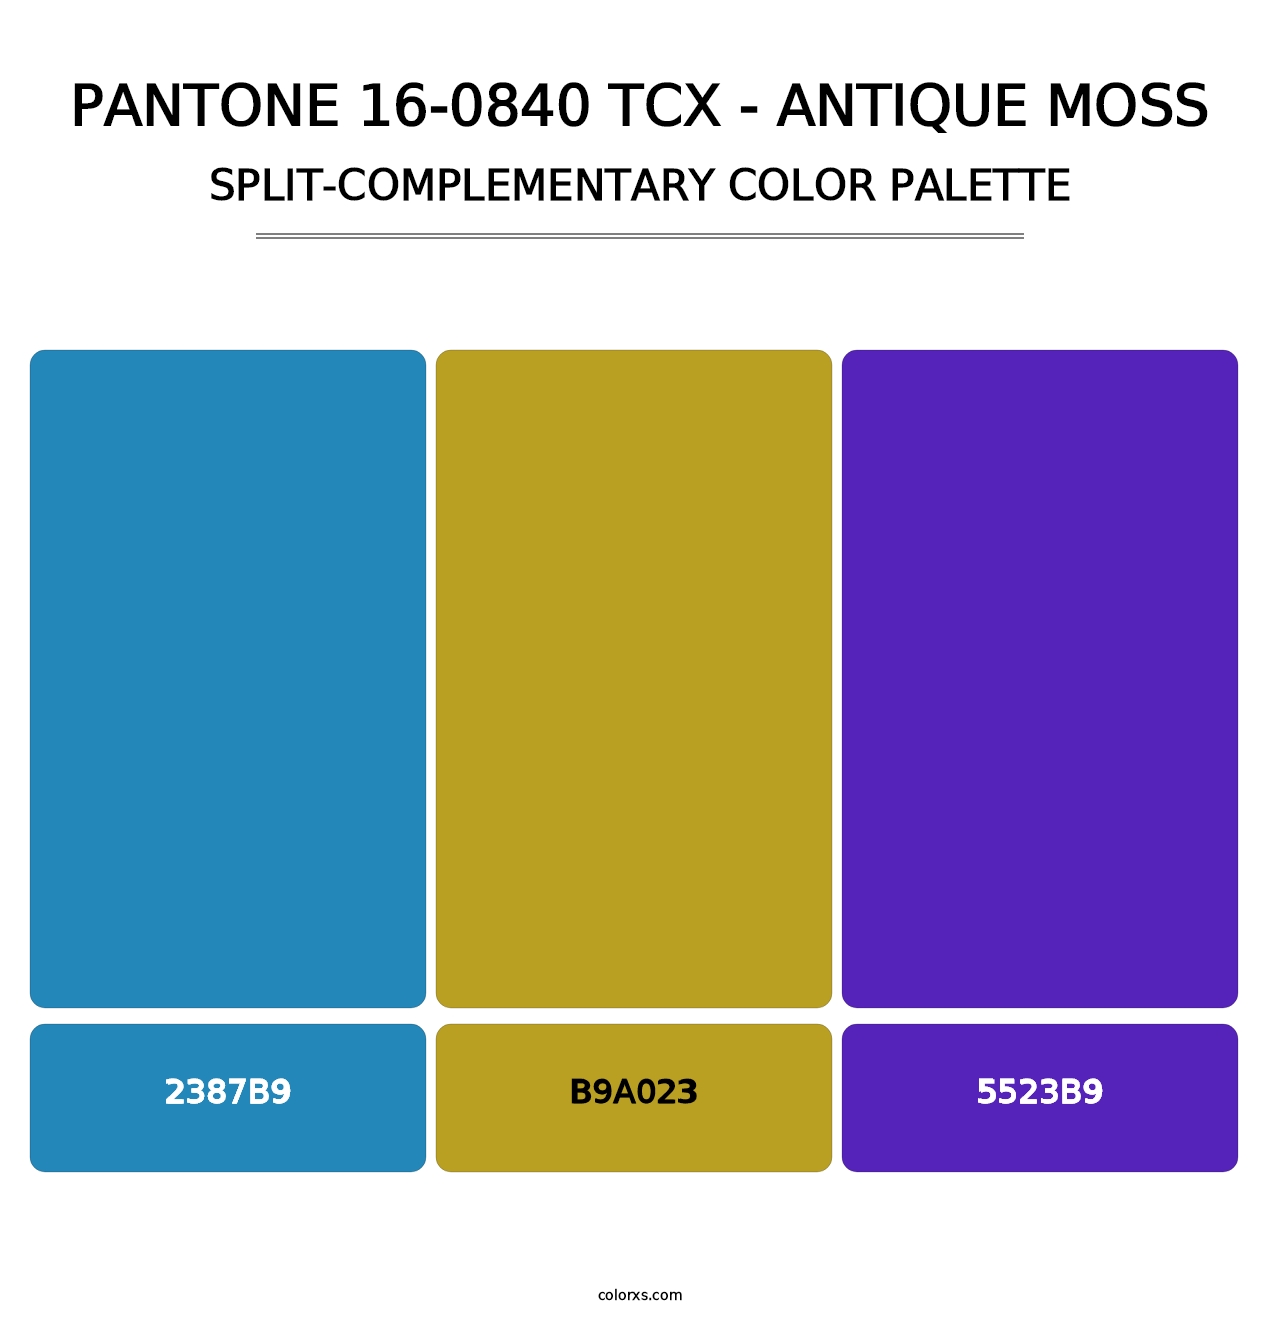 PANTONE 16-0840 TCX - Antique Moss - Split-Complementary Color Palette